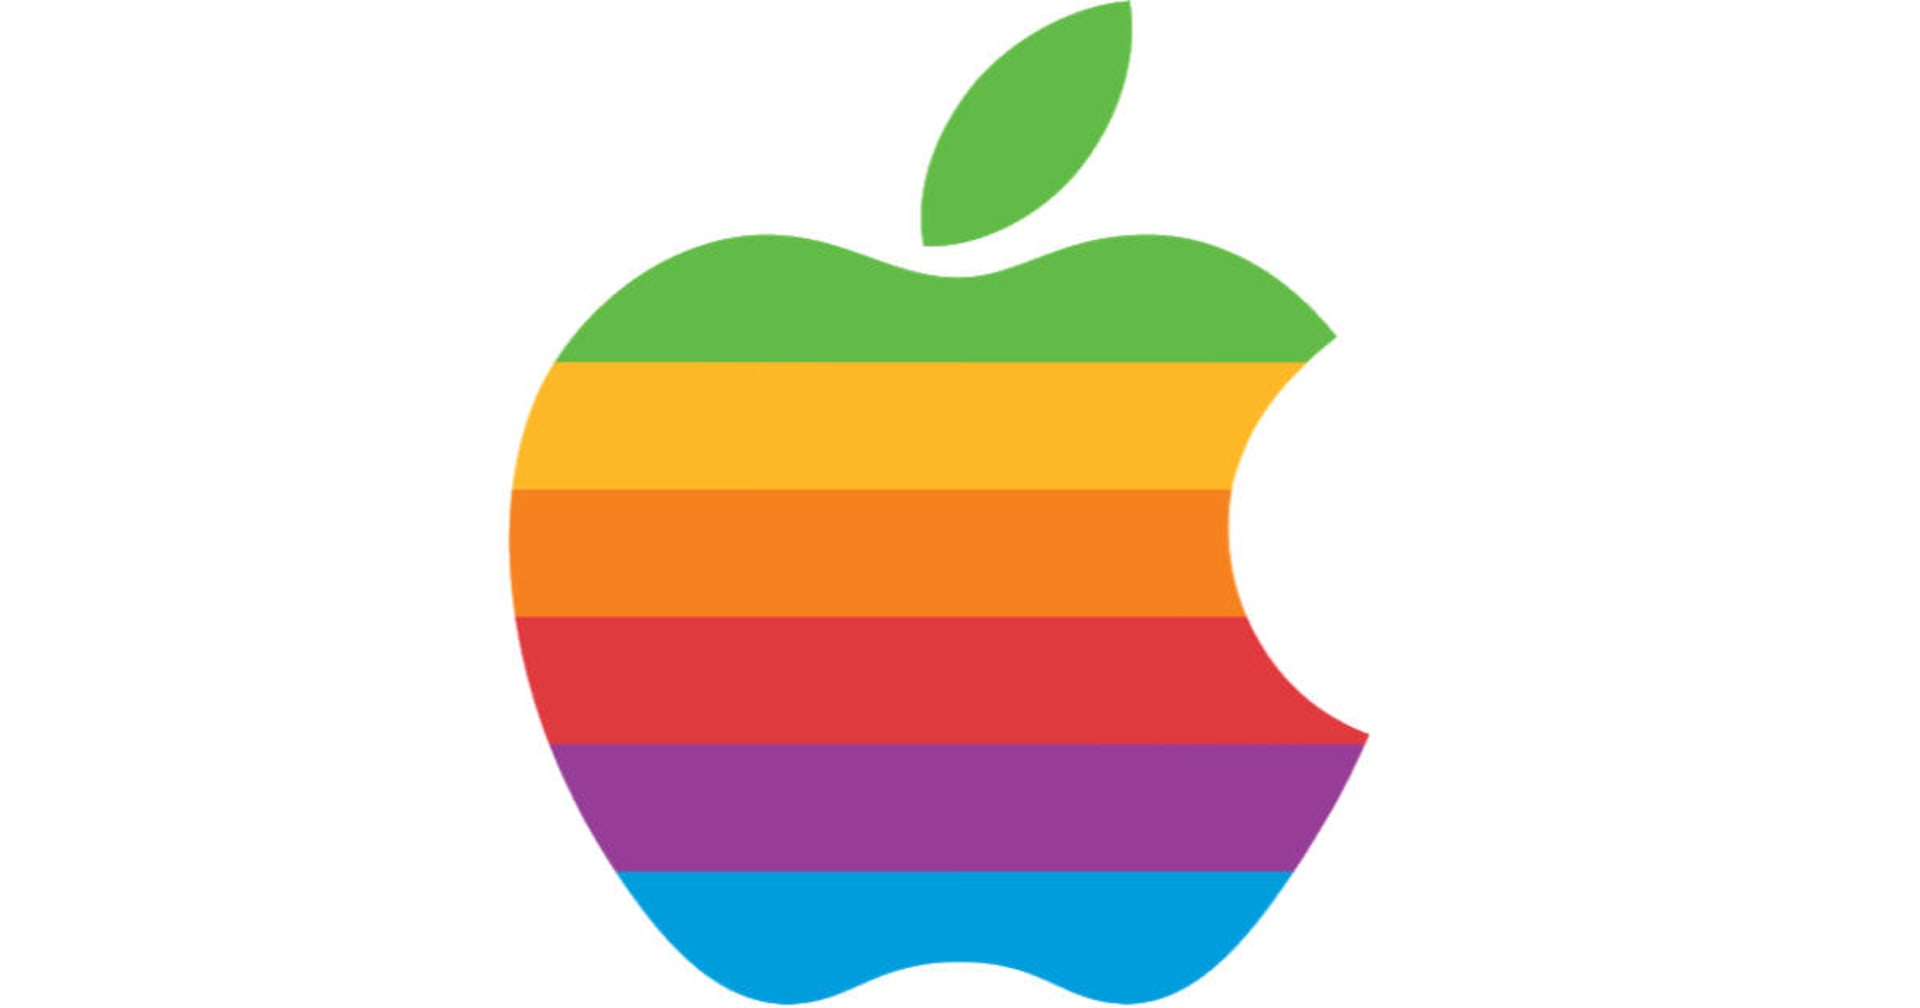 Staré duhové logo firmy Apple, k němuž odkazuje pódium uprostřed Apple Parku